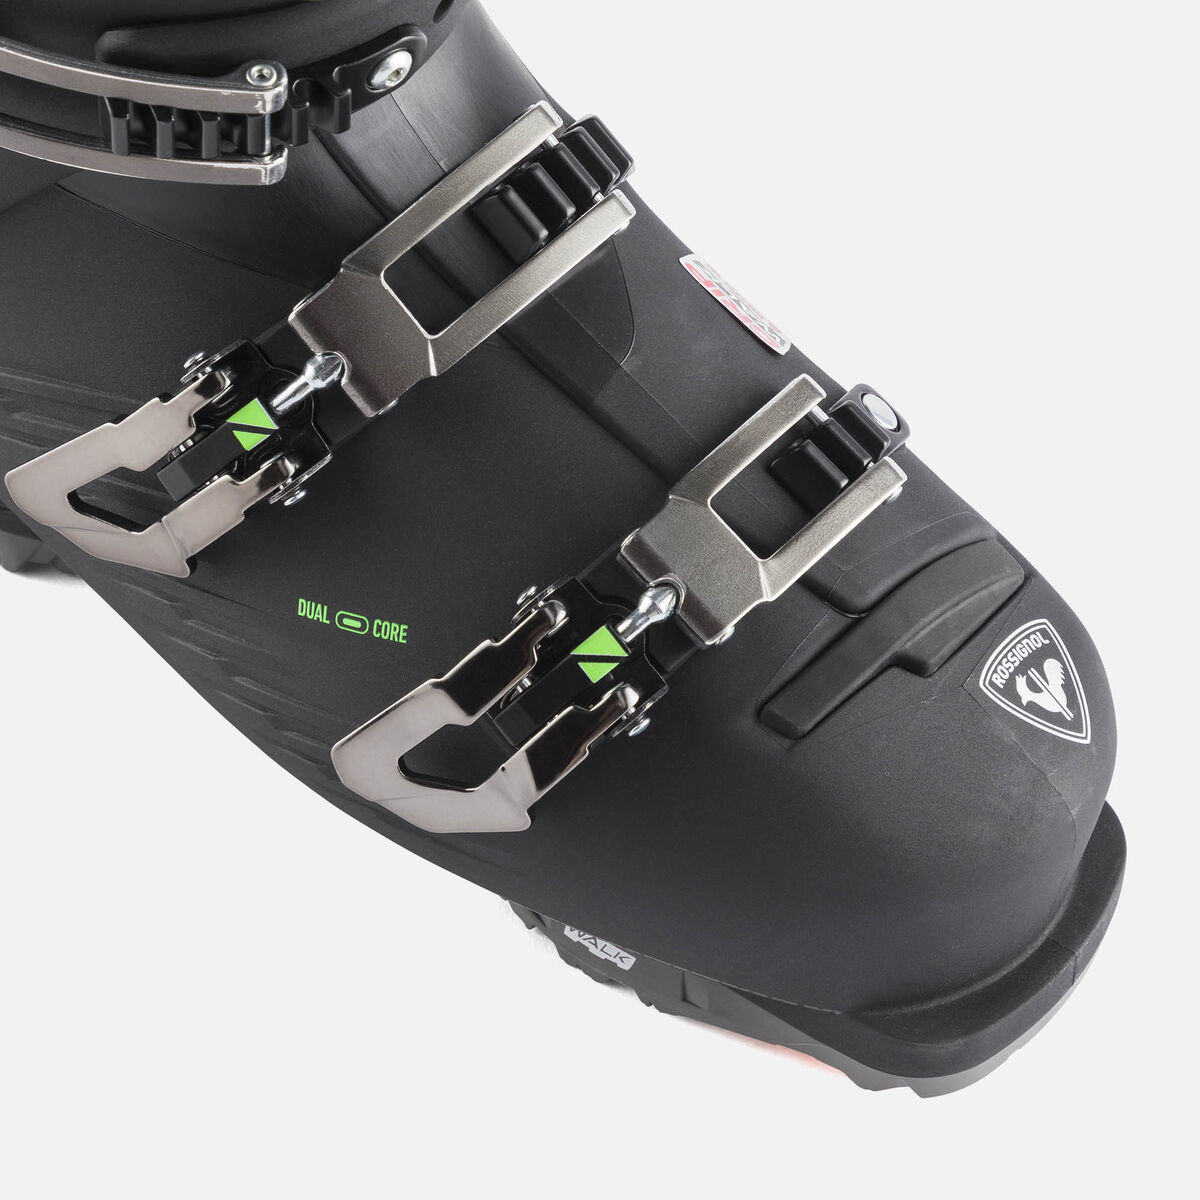 Chaussures de ski de piste homme HI-Speed Pro 120 MV GW